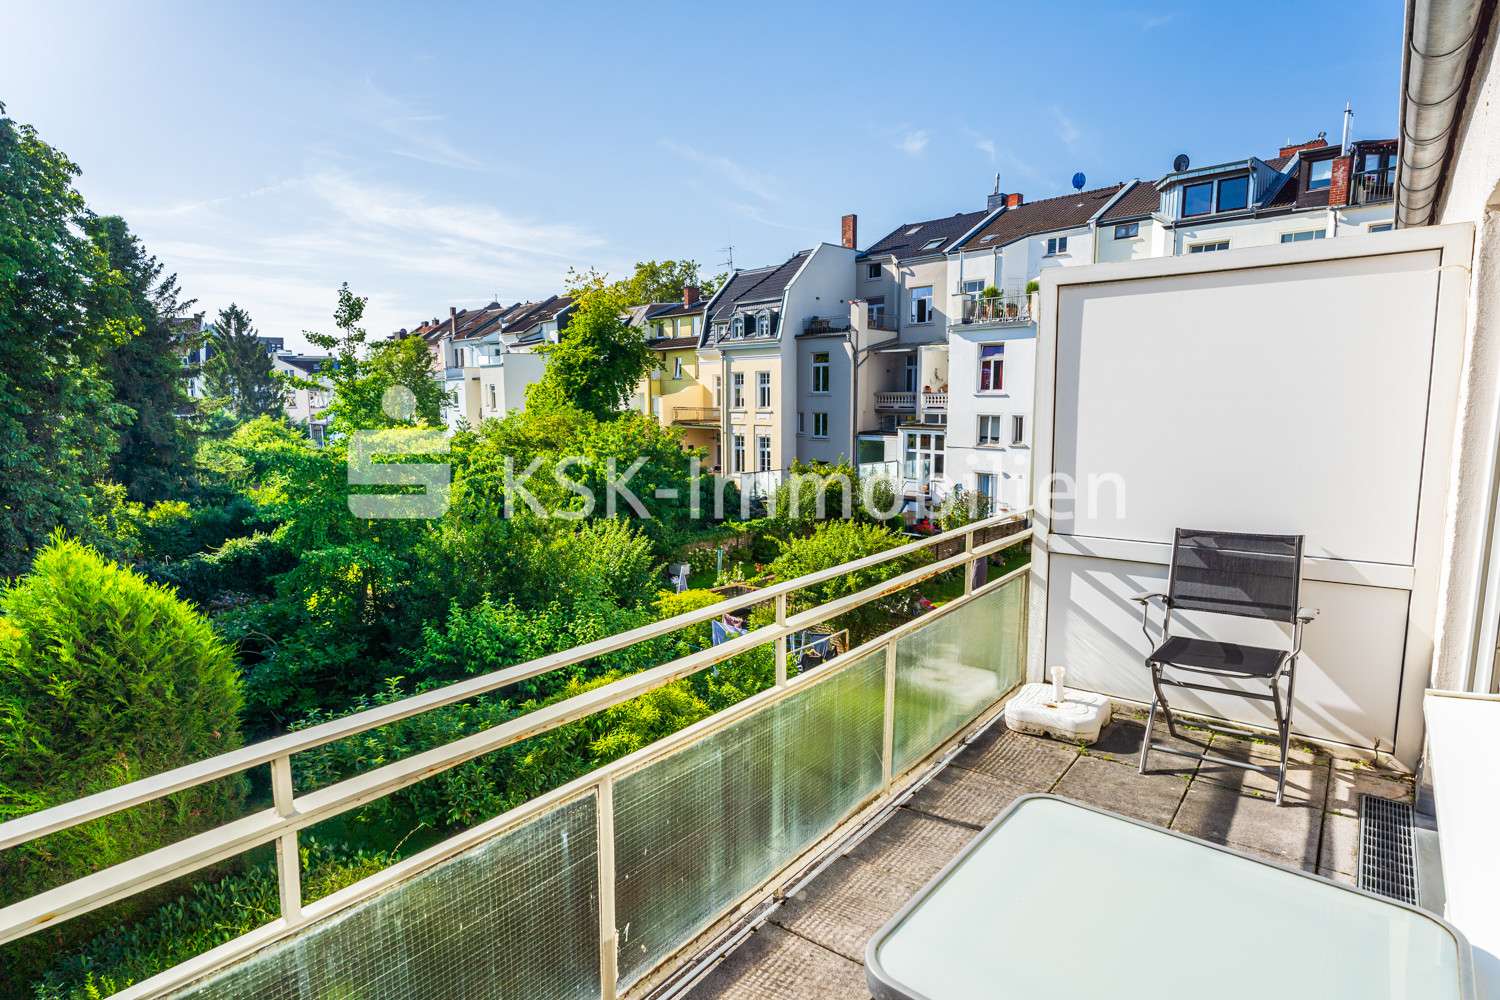 113328 Balkon - Etagenwohnung in 53115 Bonn mit 92m² kaufen